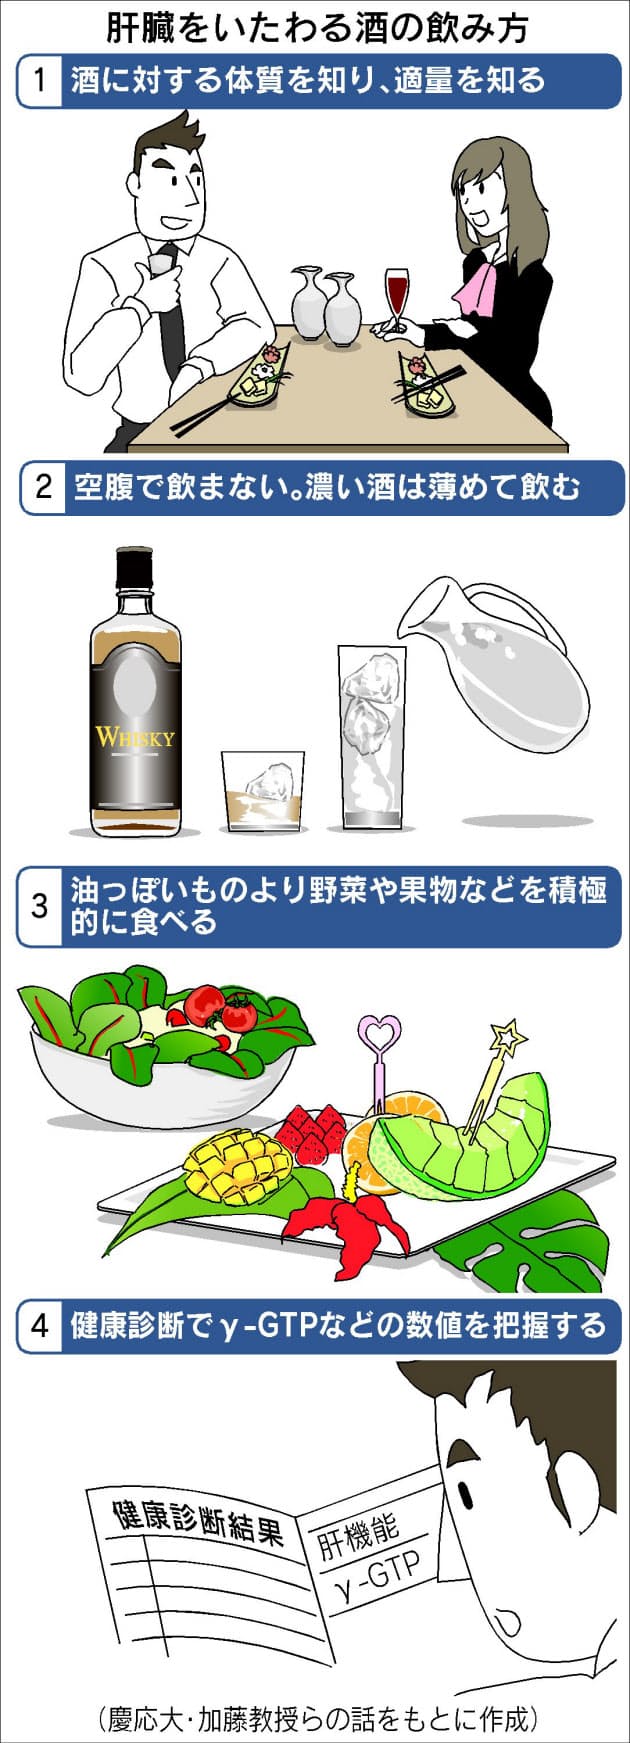 お酒に強い 思い込み禁物 肝臓に脂肪蓄積の恐れ Nikkei Style